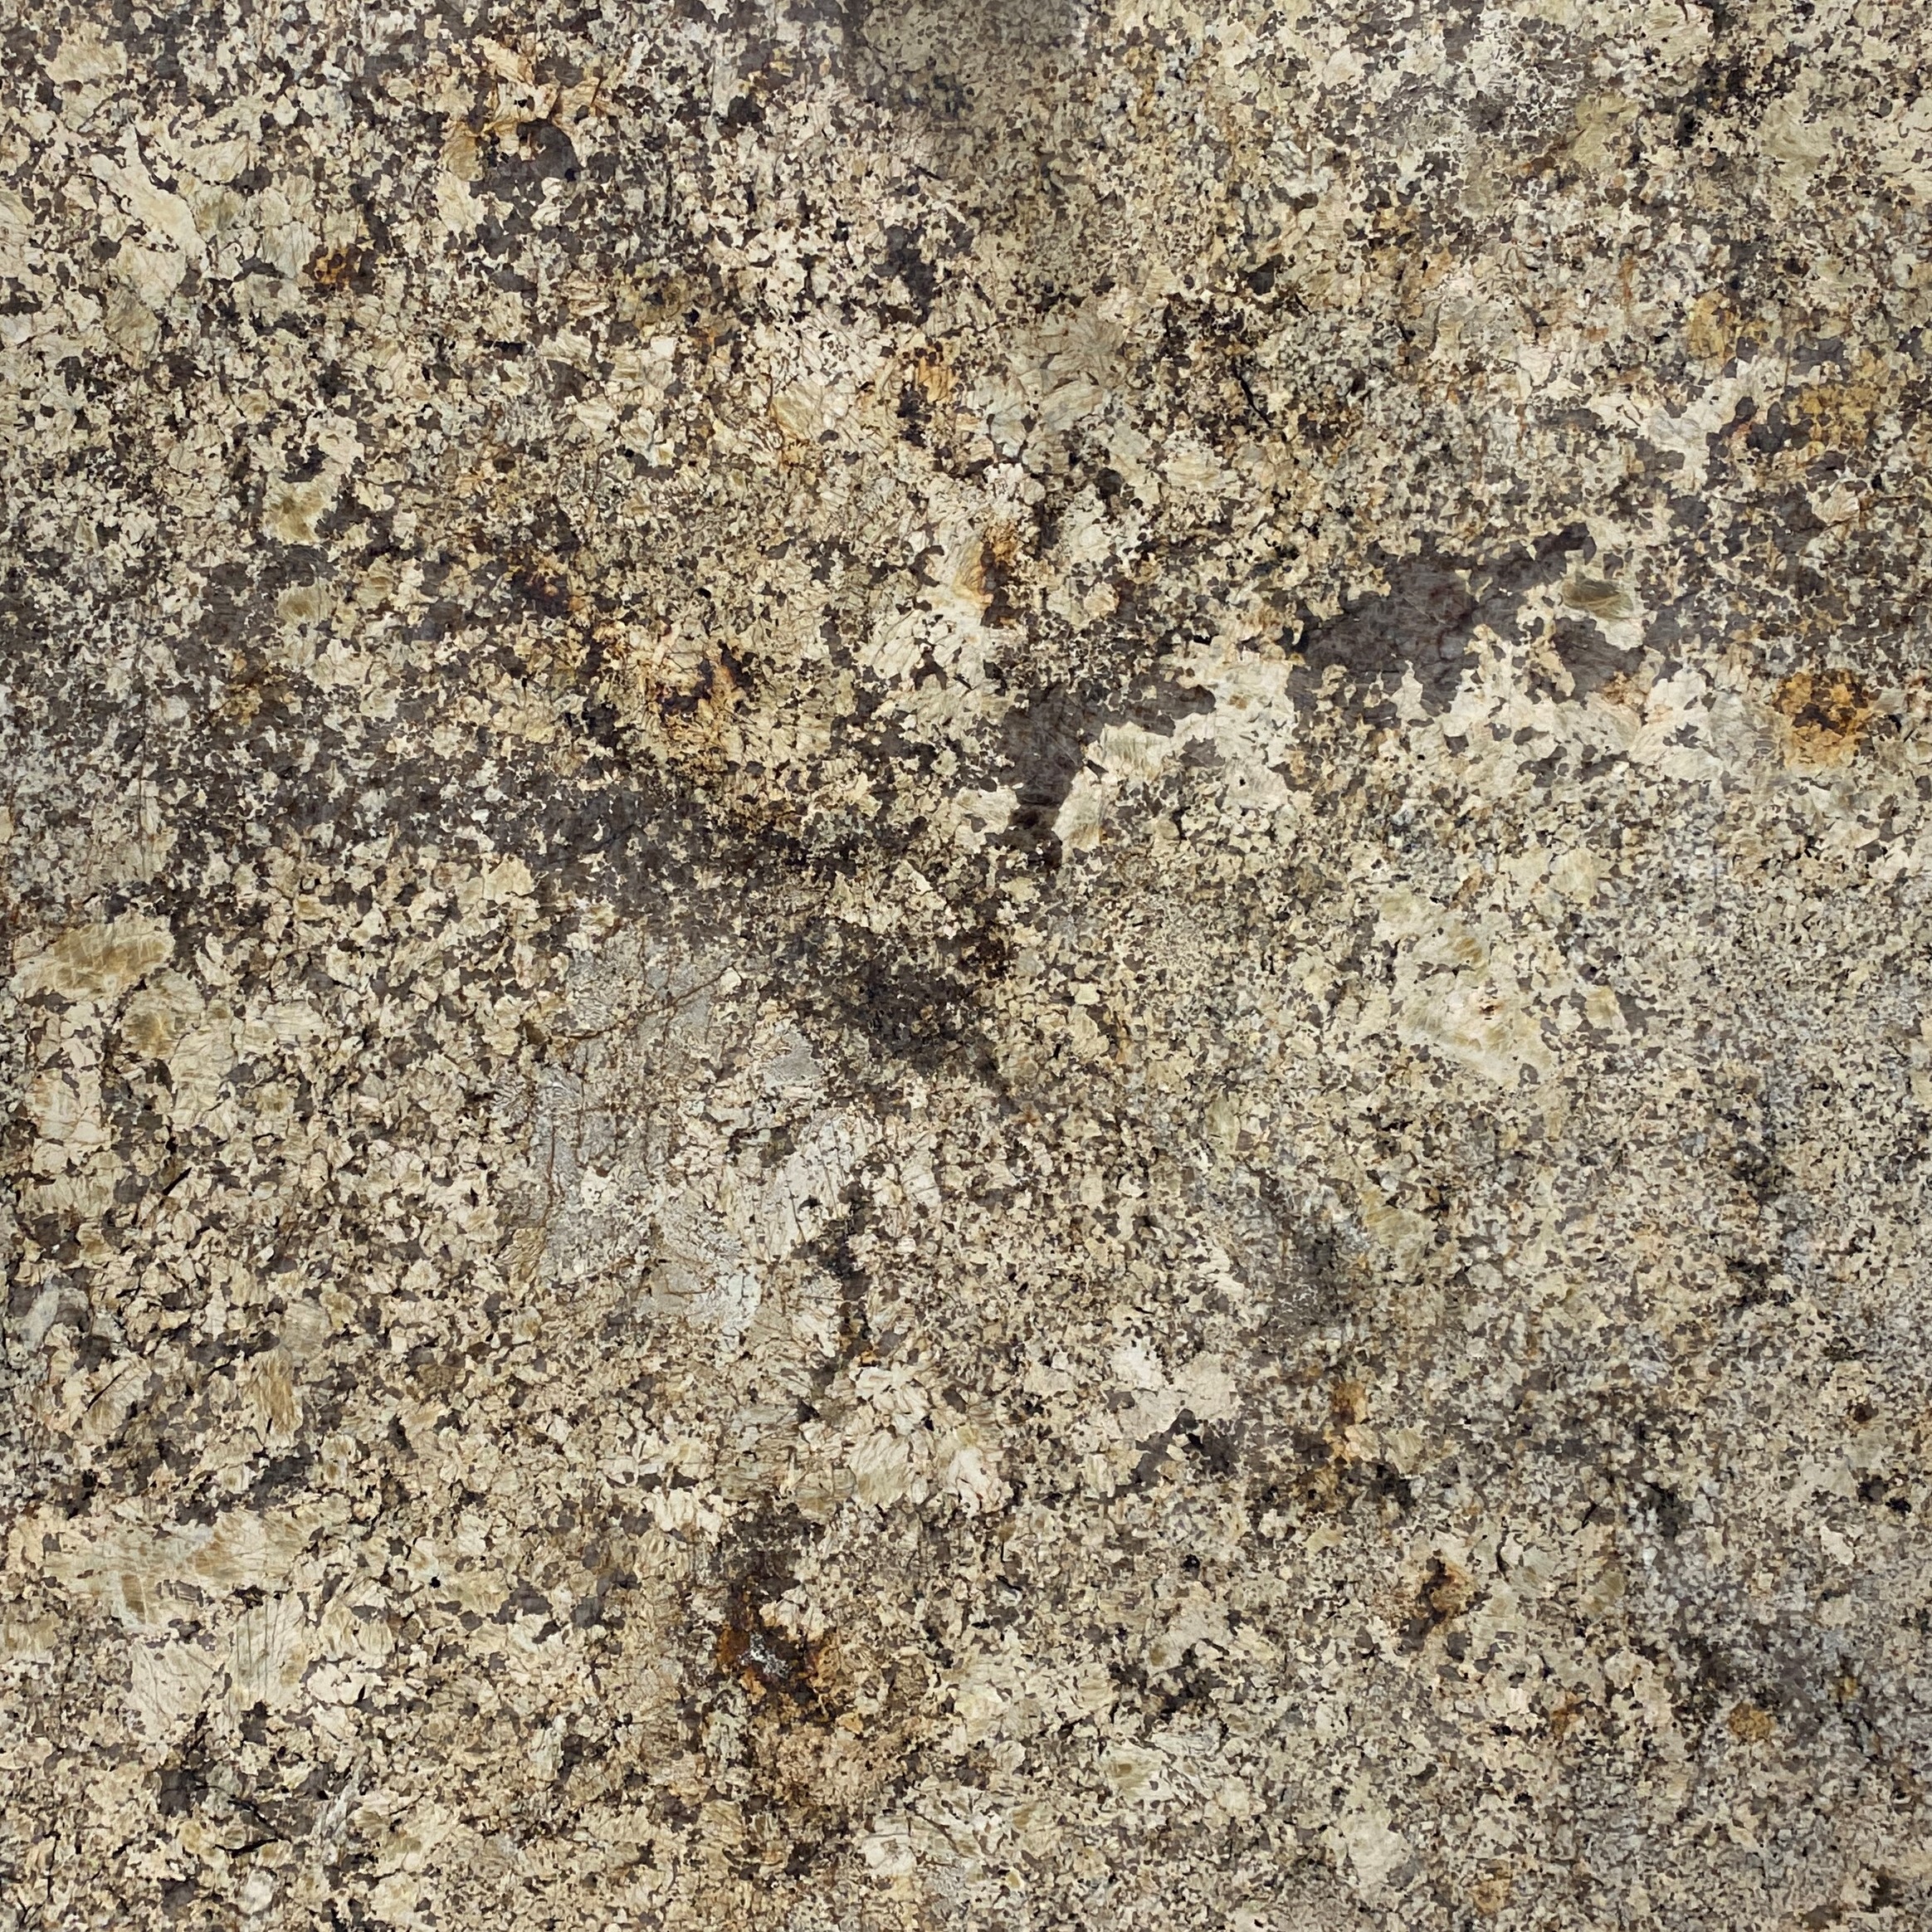 SOLARIUS Granite polished 2cm thick - Slab